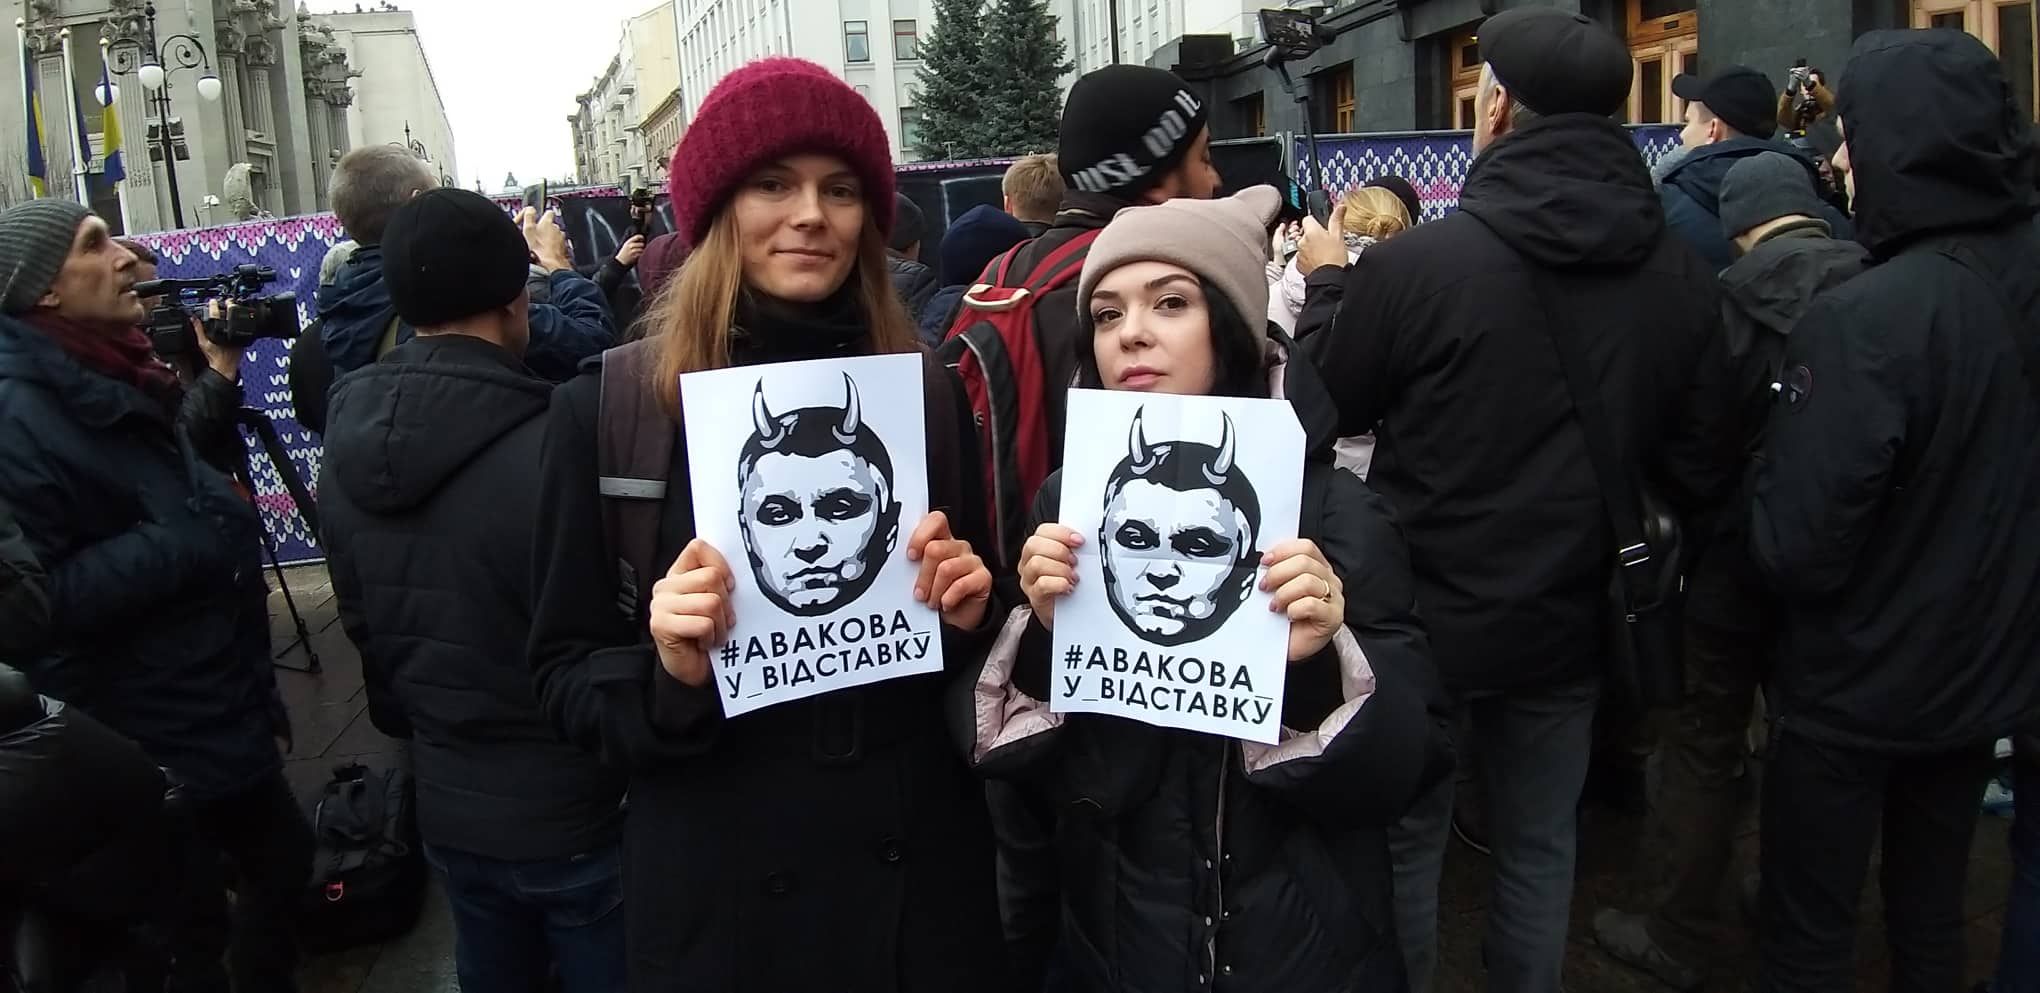 Аваков объединил: в Киеве протестуют против фальсификаций по делу Шеремета